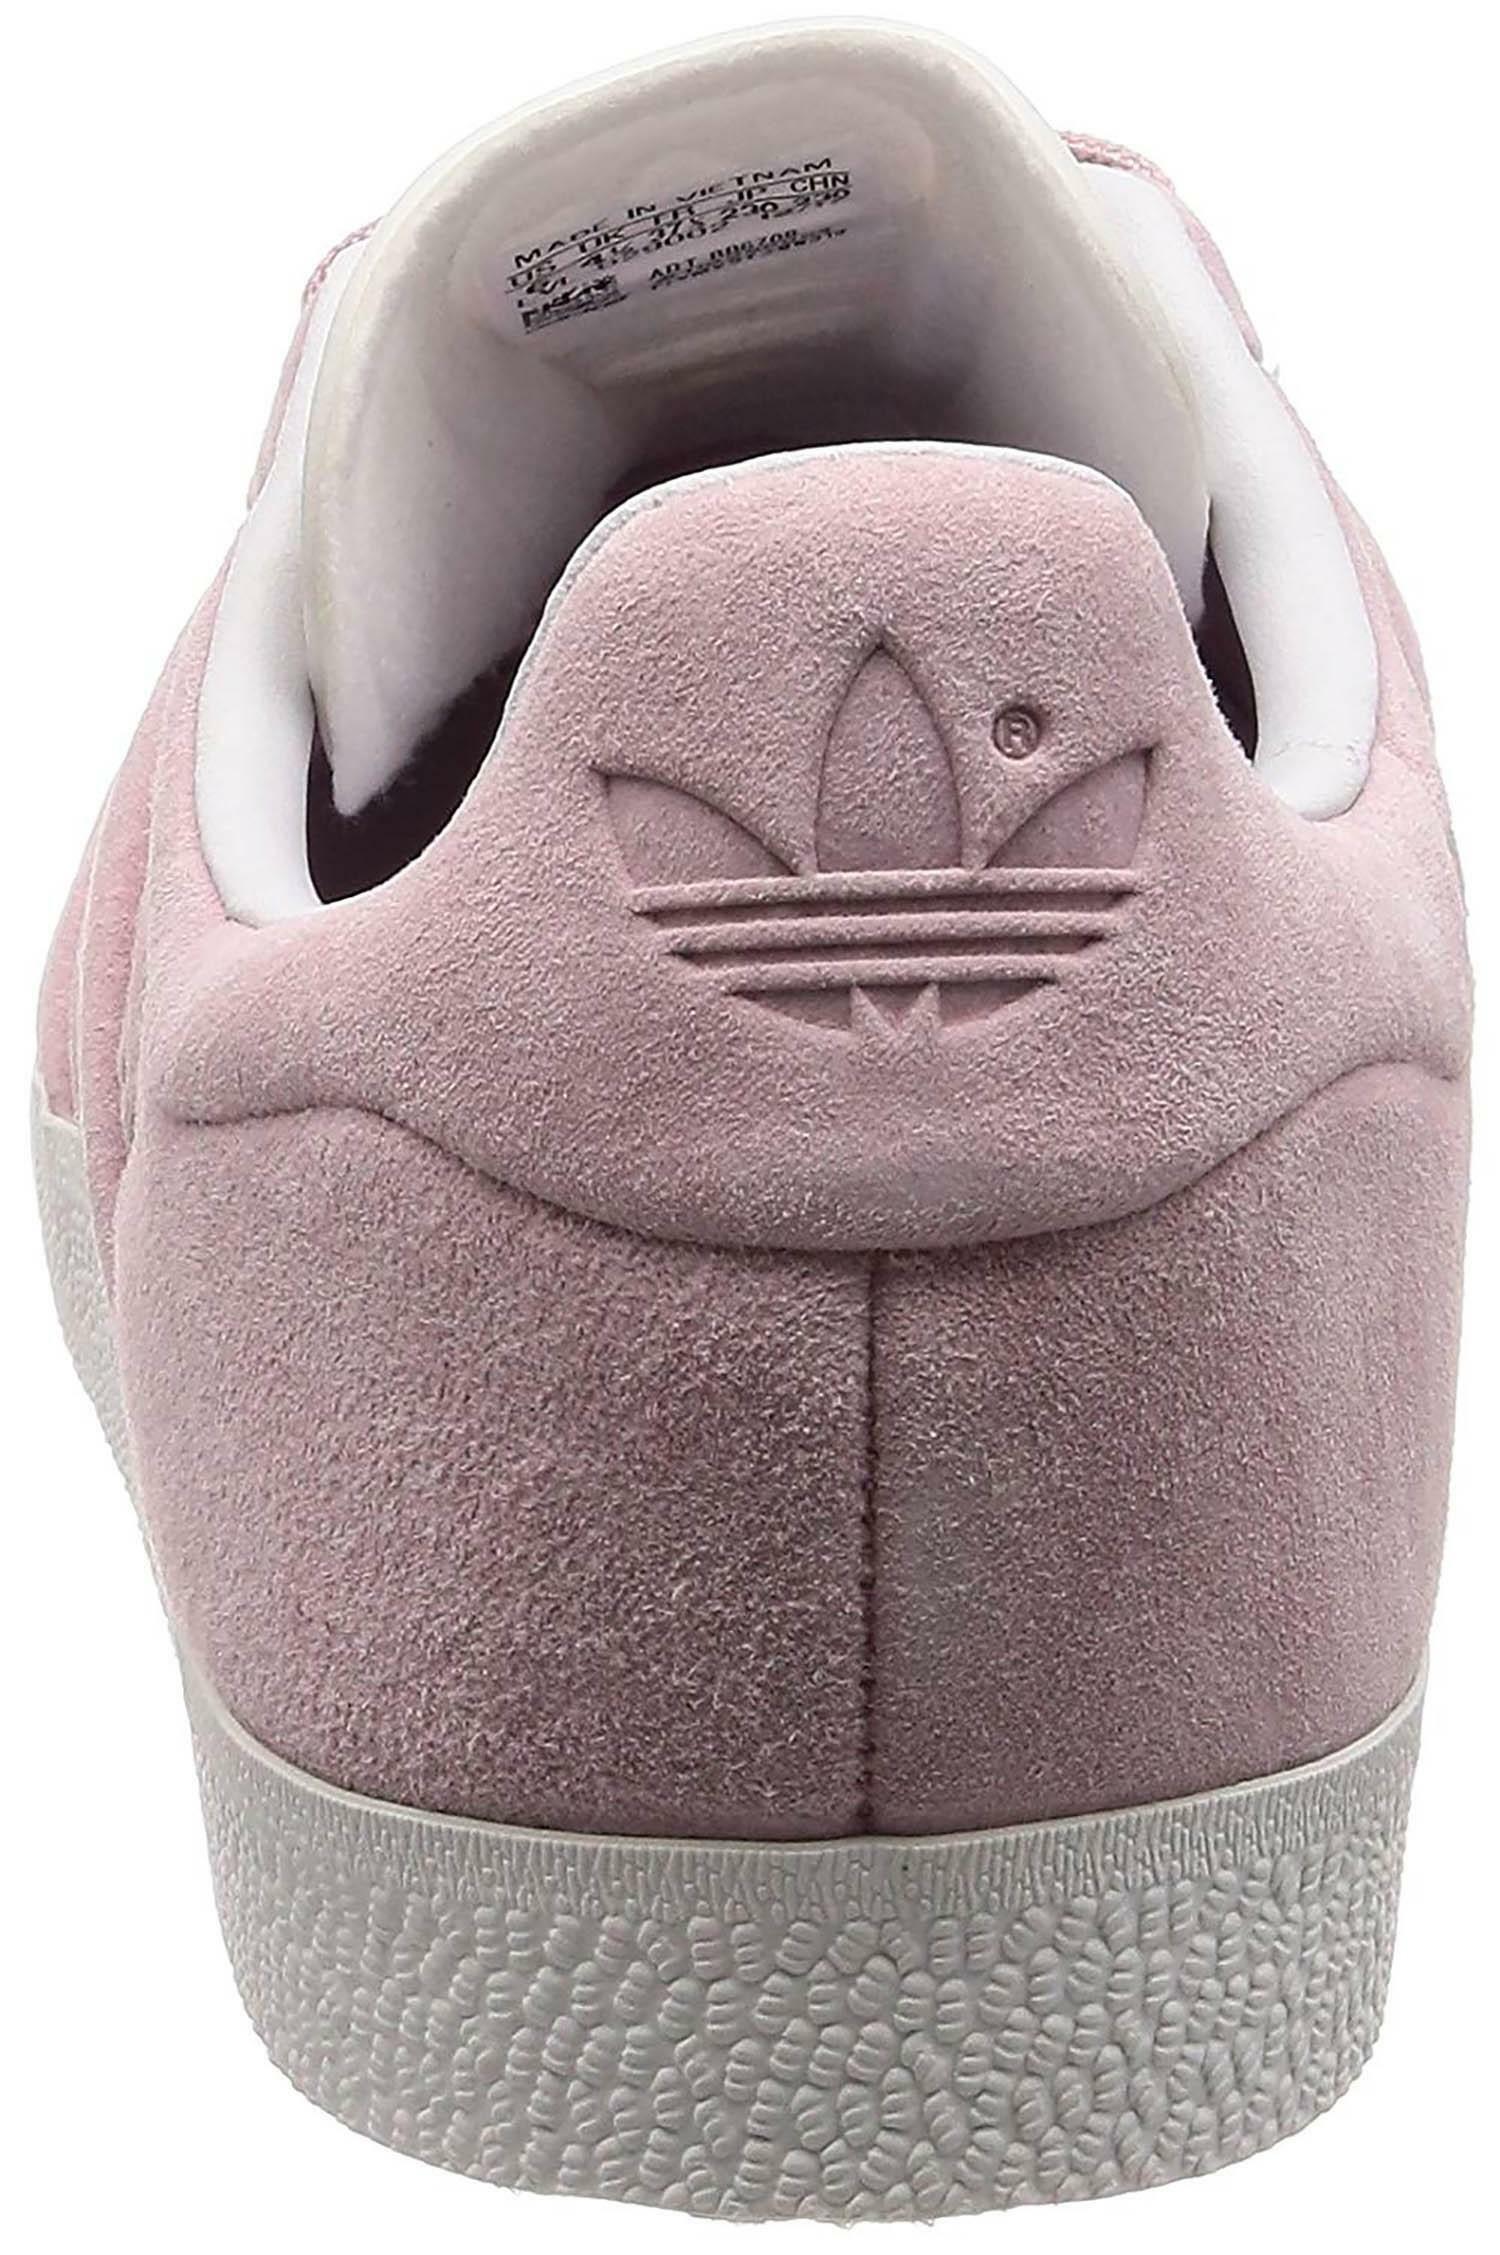 adidas adidas gazelle stitch and turn scarpe sportive donna rosa bb6708